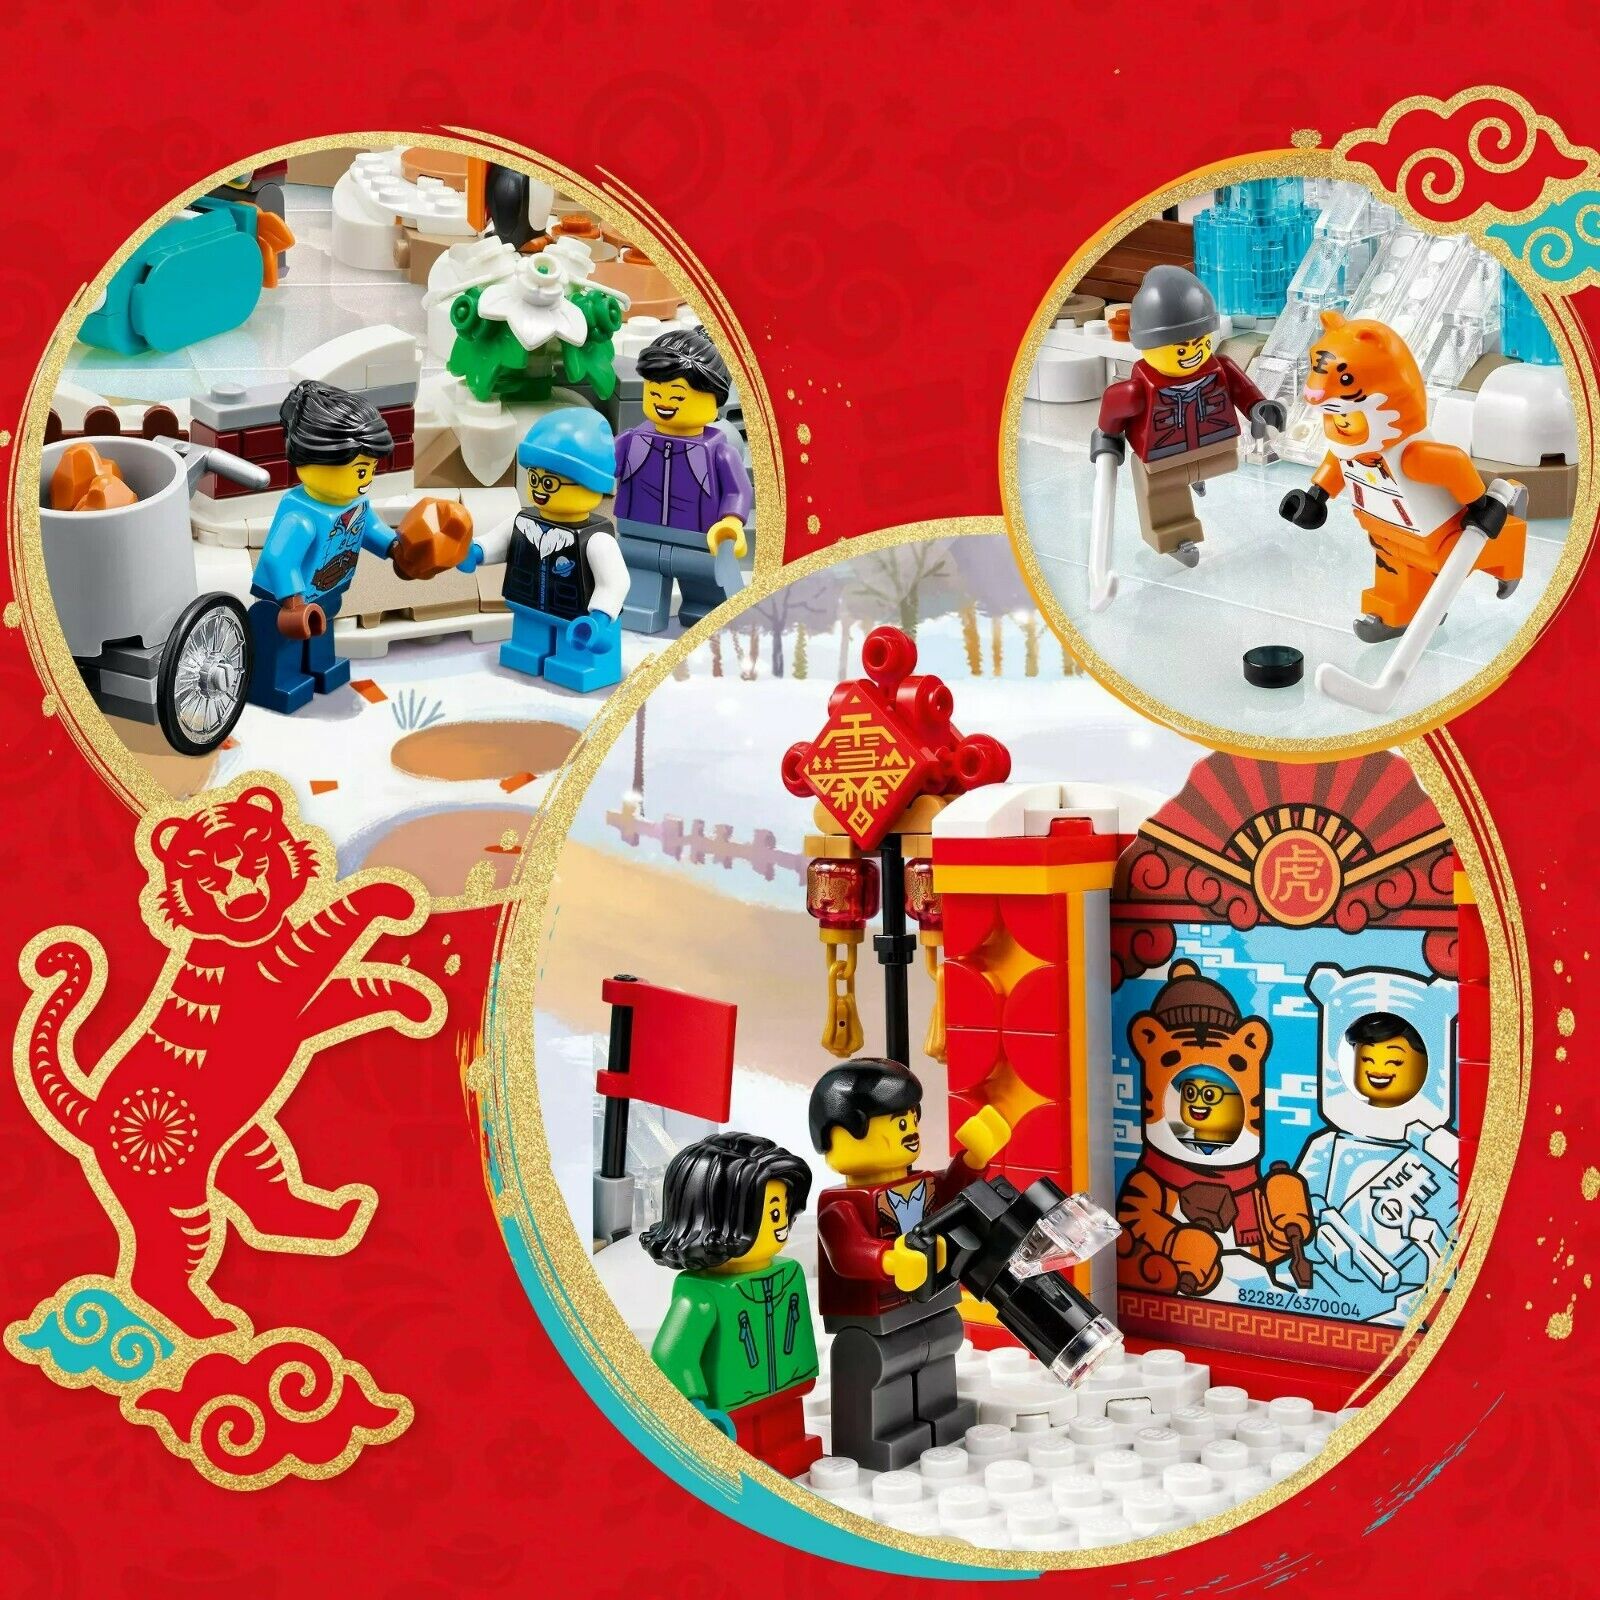 LEGO 80109 Lunar New Year Ice Festival New 2022